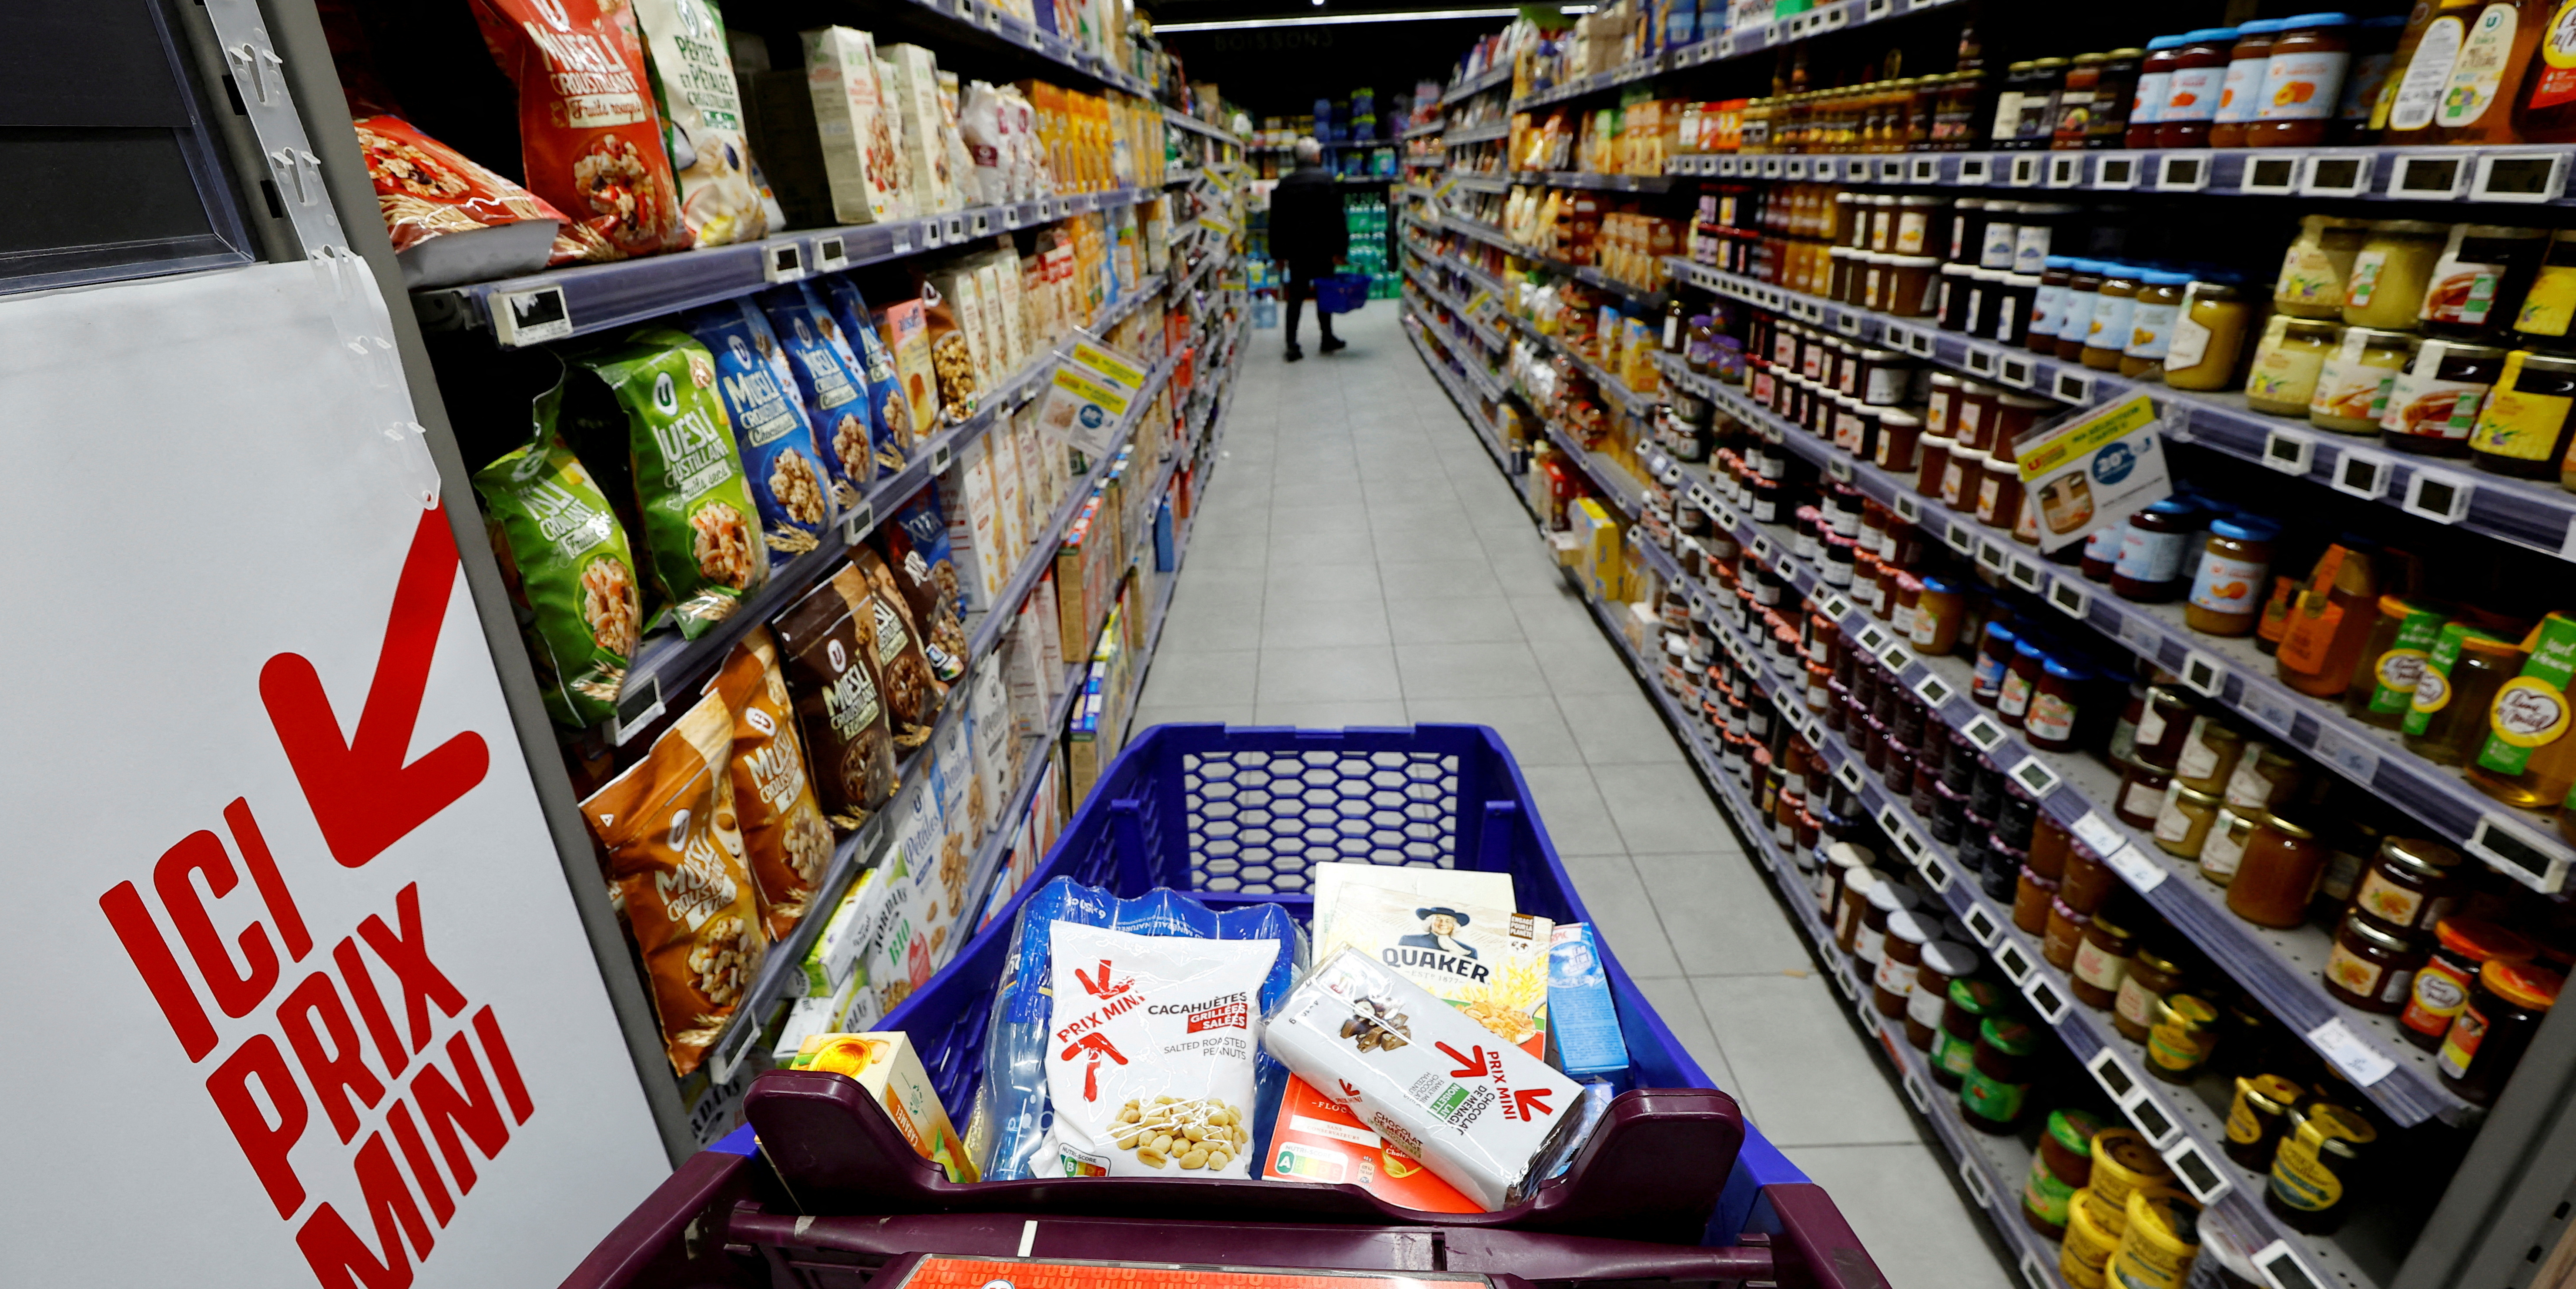 Inflation : Borne met la pression sur les industriels pour faire baisser les prix de l'alimentaire